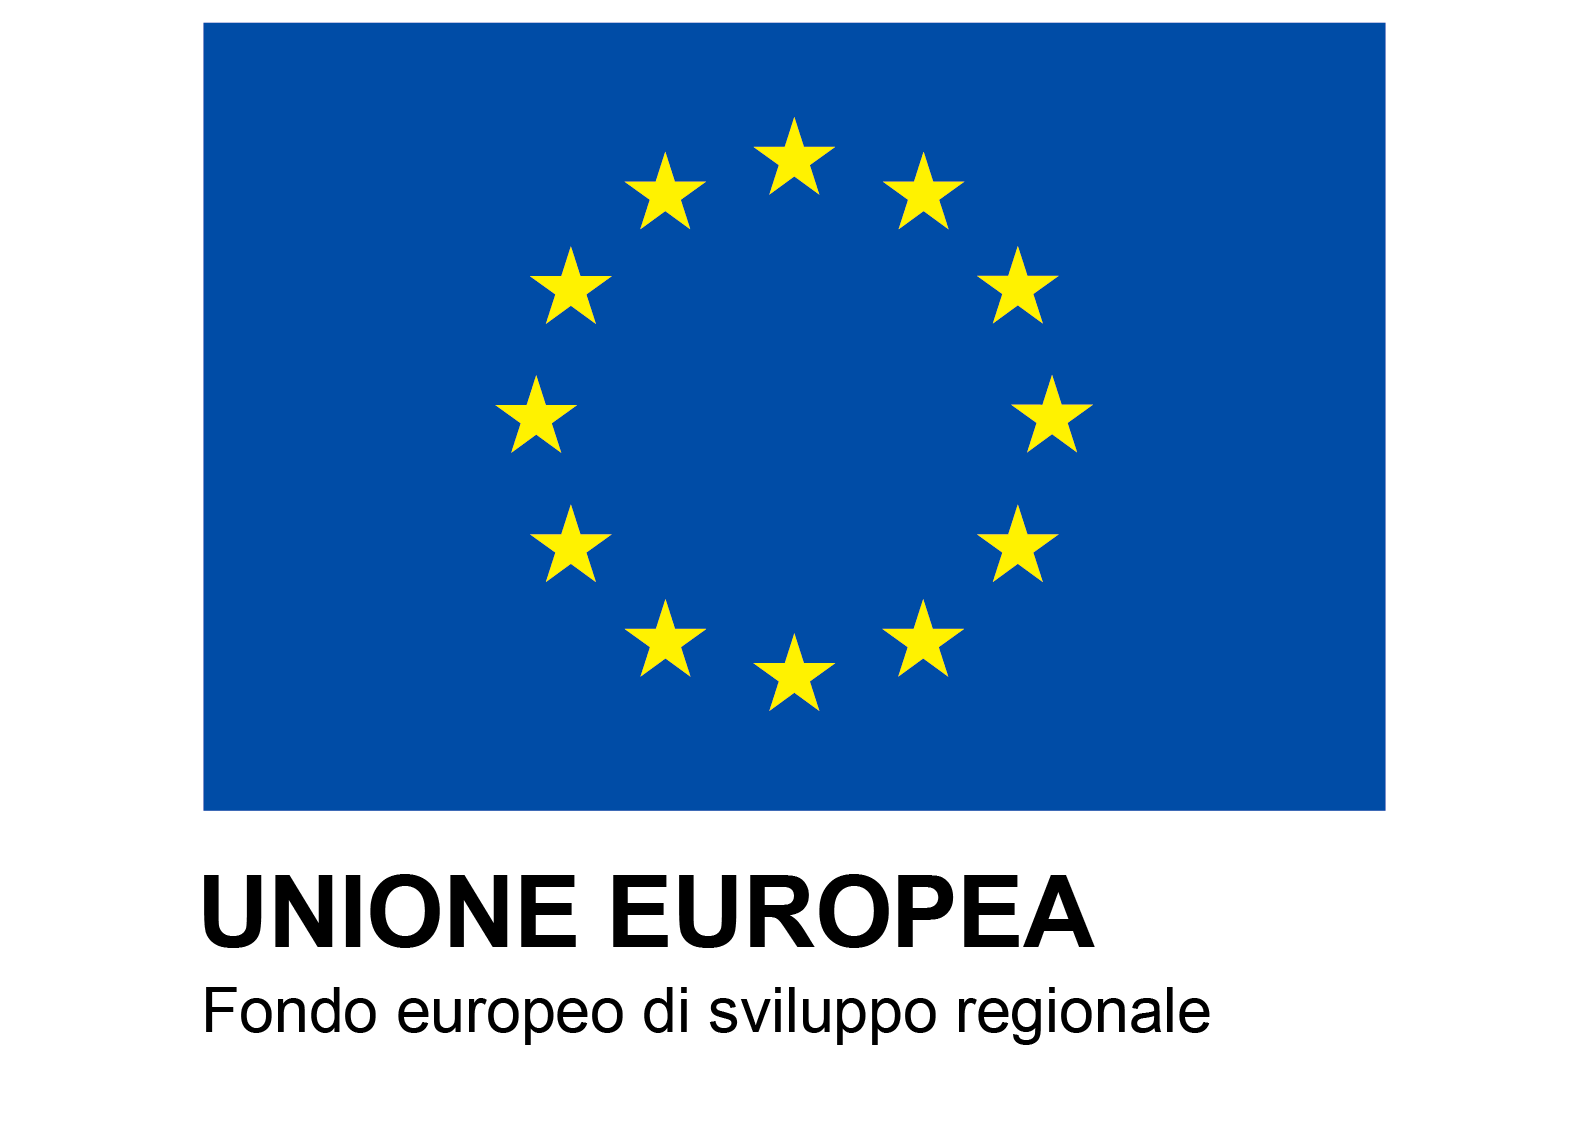 Europa fondo europeo di sviluppo regionale